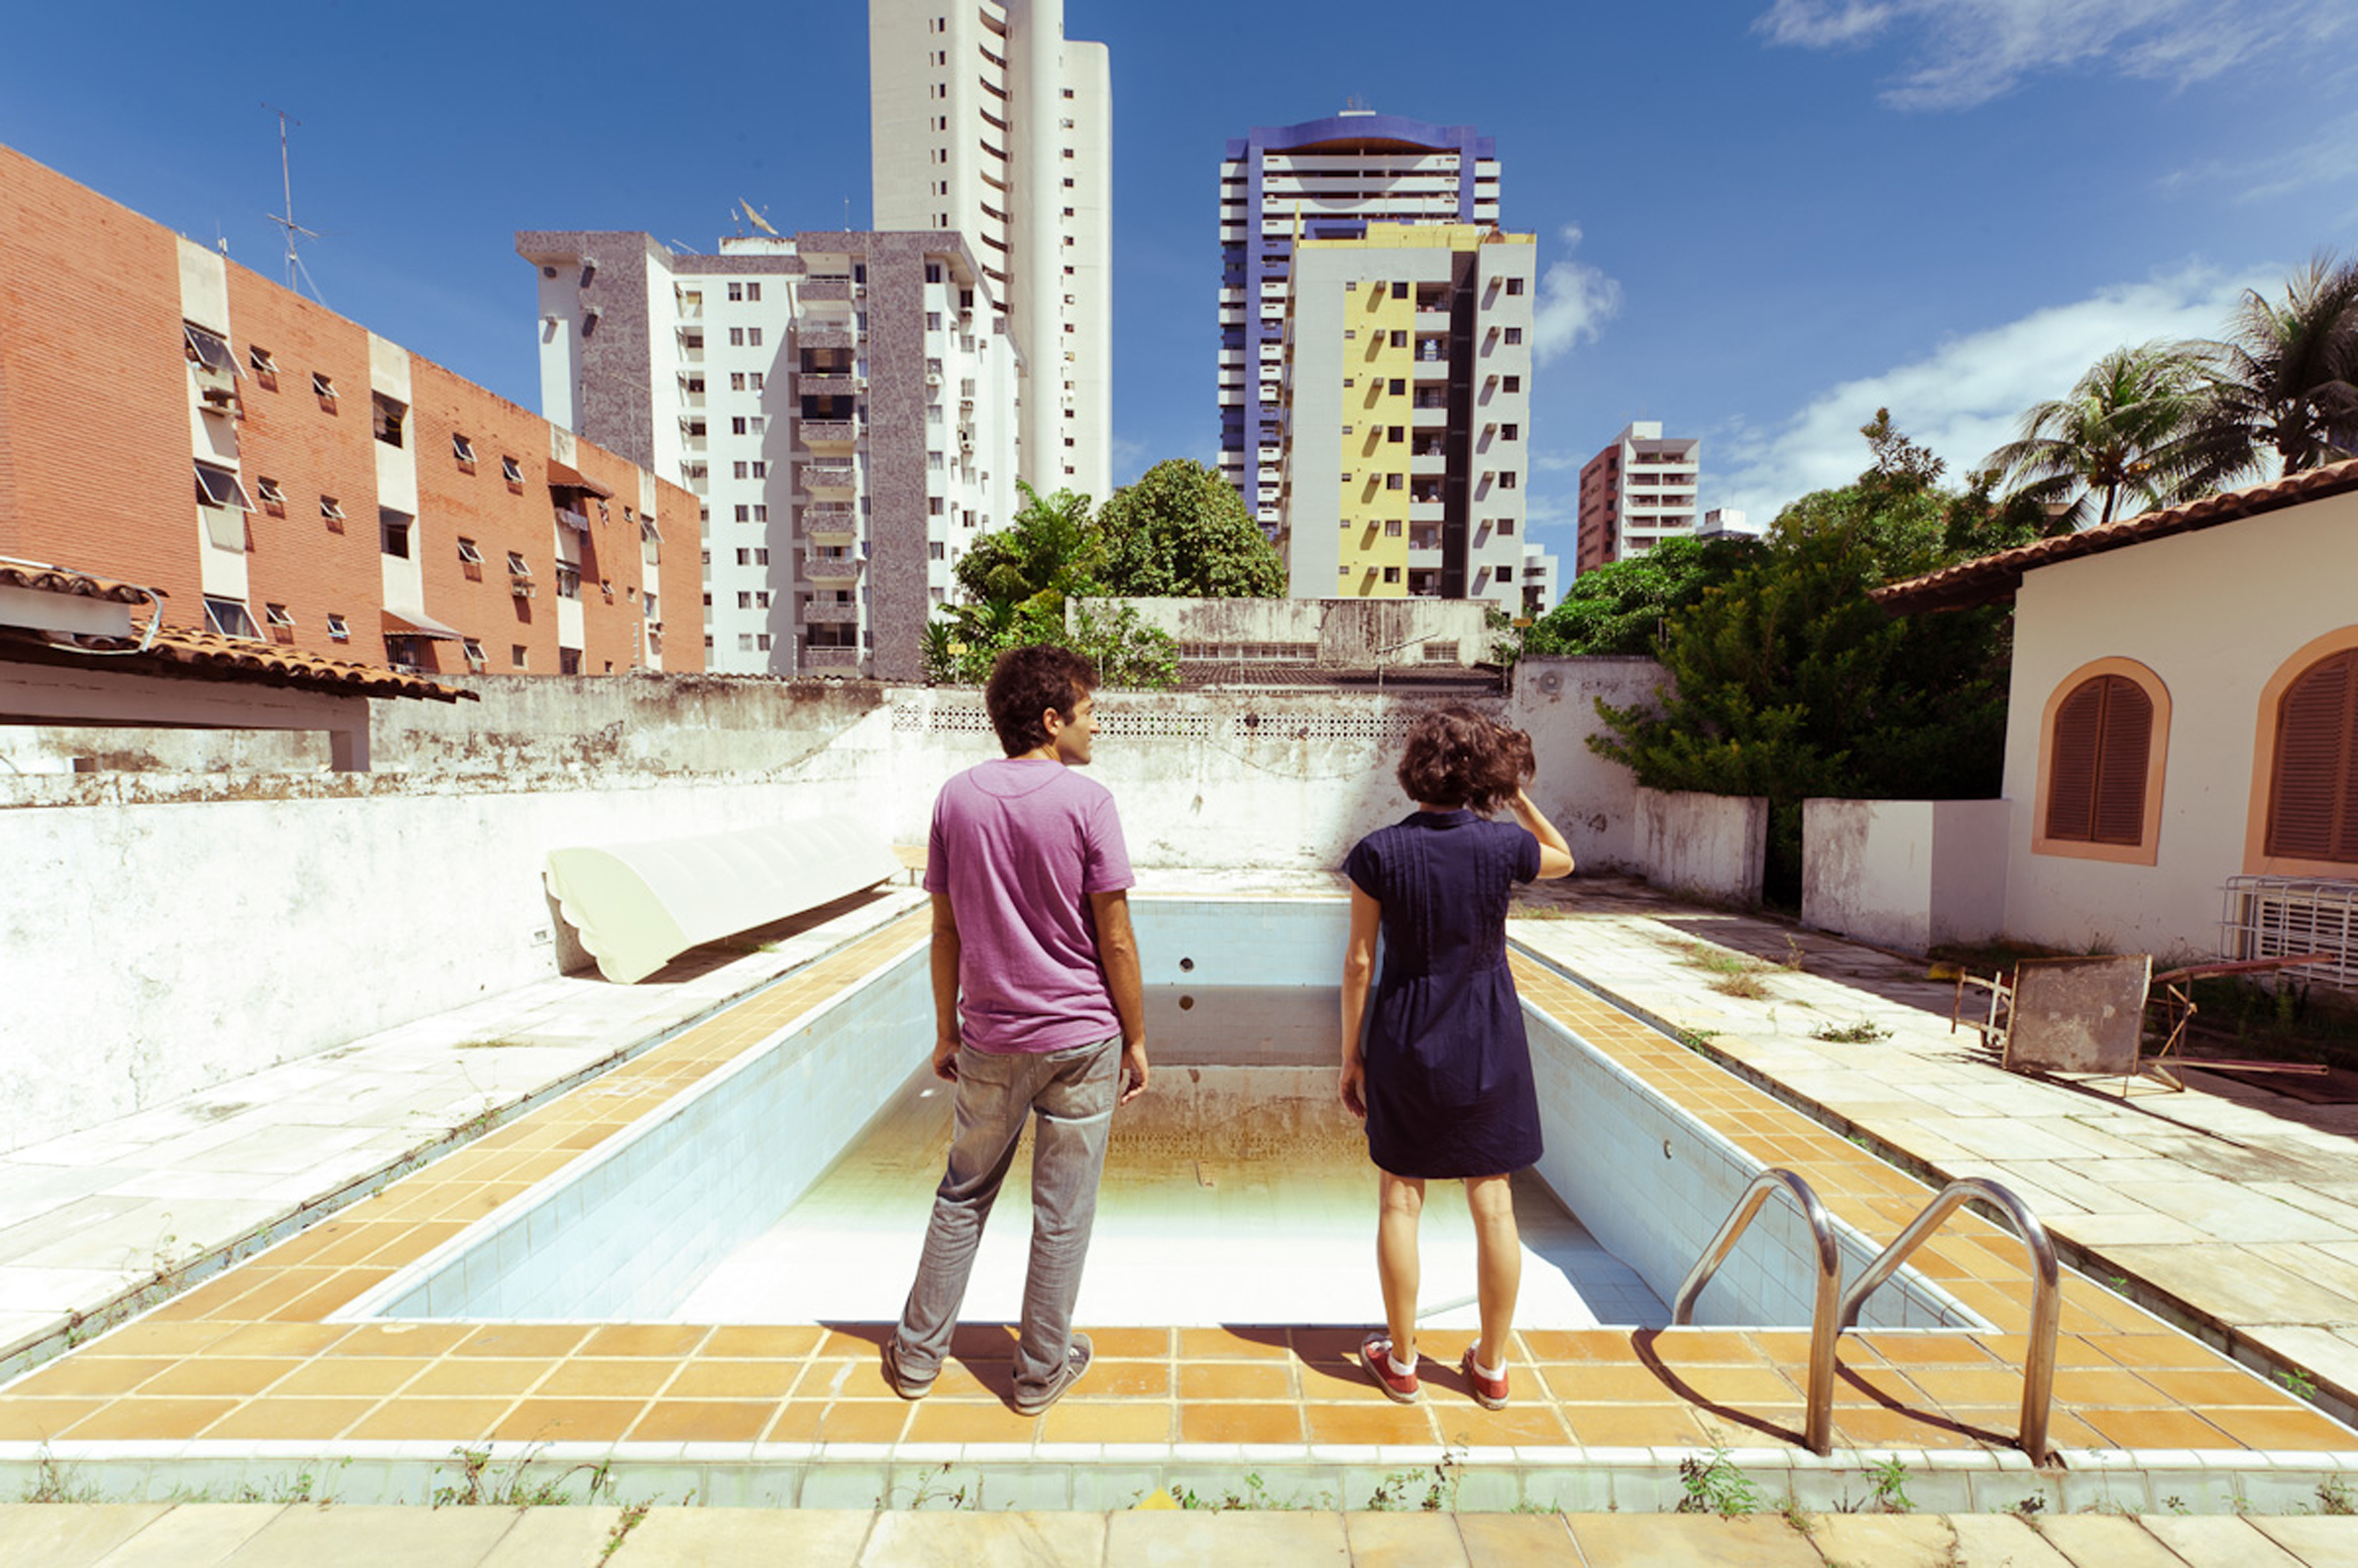 Obra traz cenários abandonados e habitados de um bairro de classe média de Recife